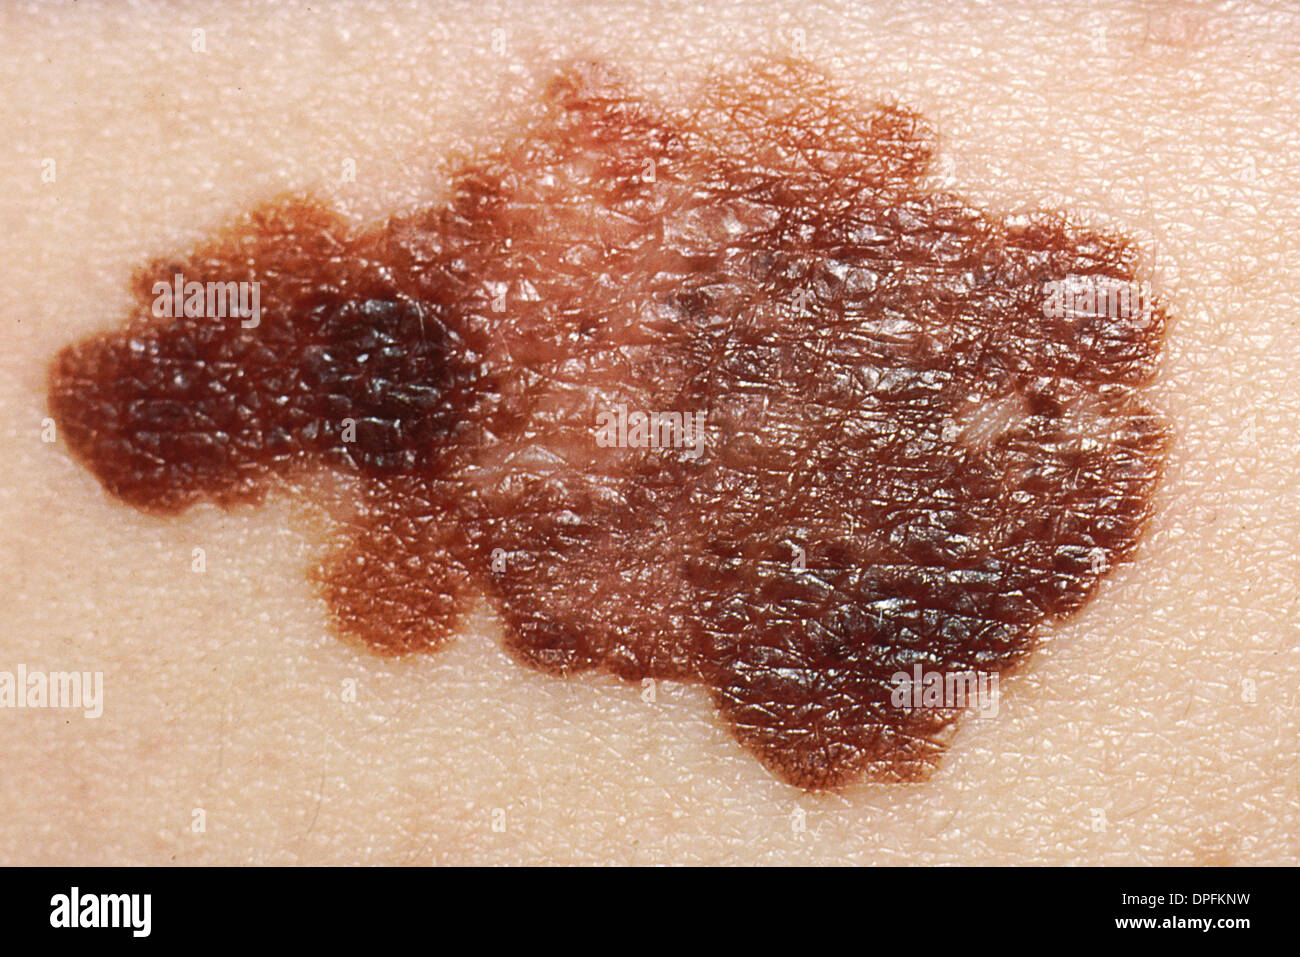 Melanoma, Skin Cancer Stock Photo